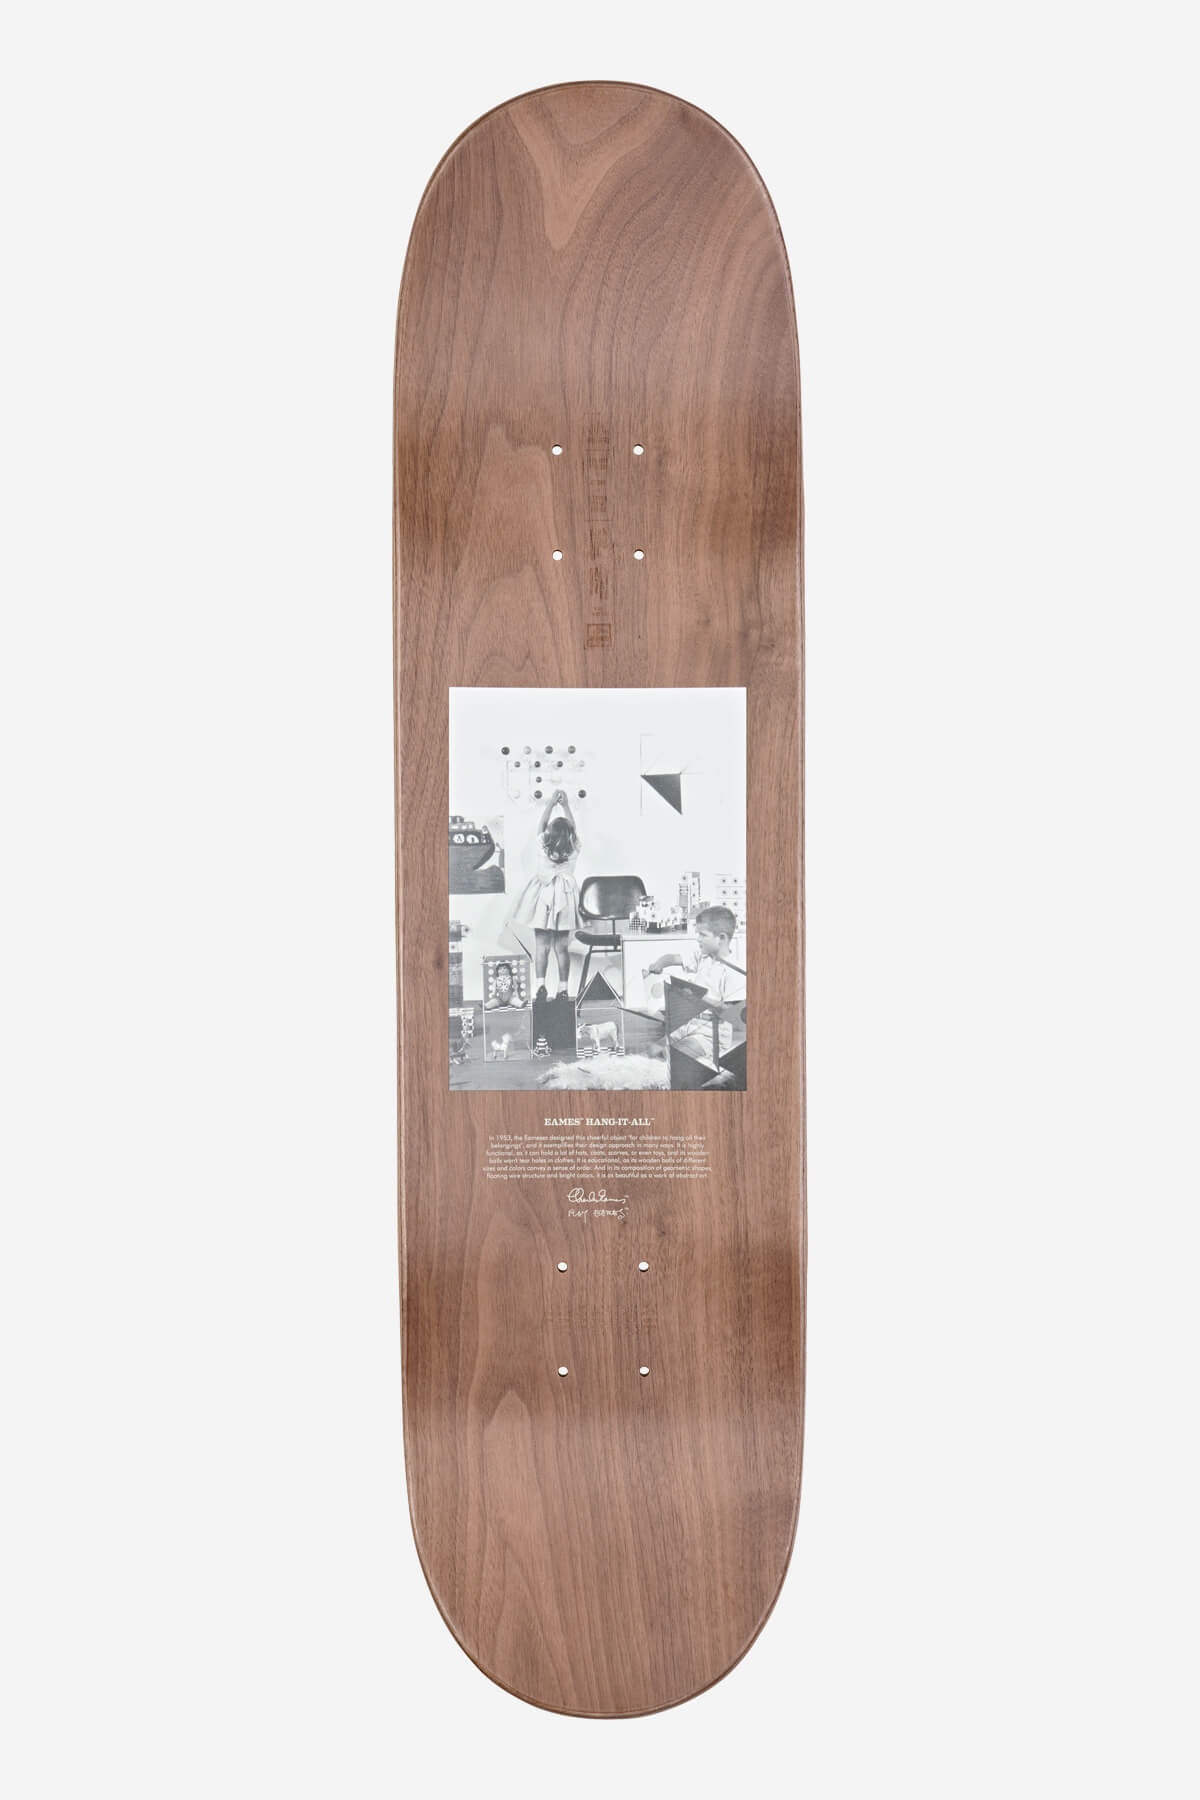 Globe - Silueta Eames - Cuelgalo-todo - 8.25" Skateboard Deck